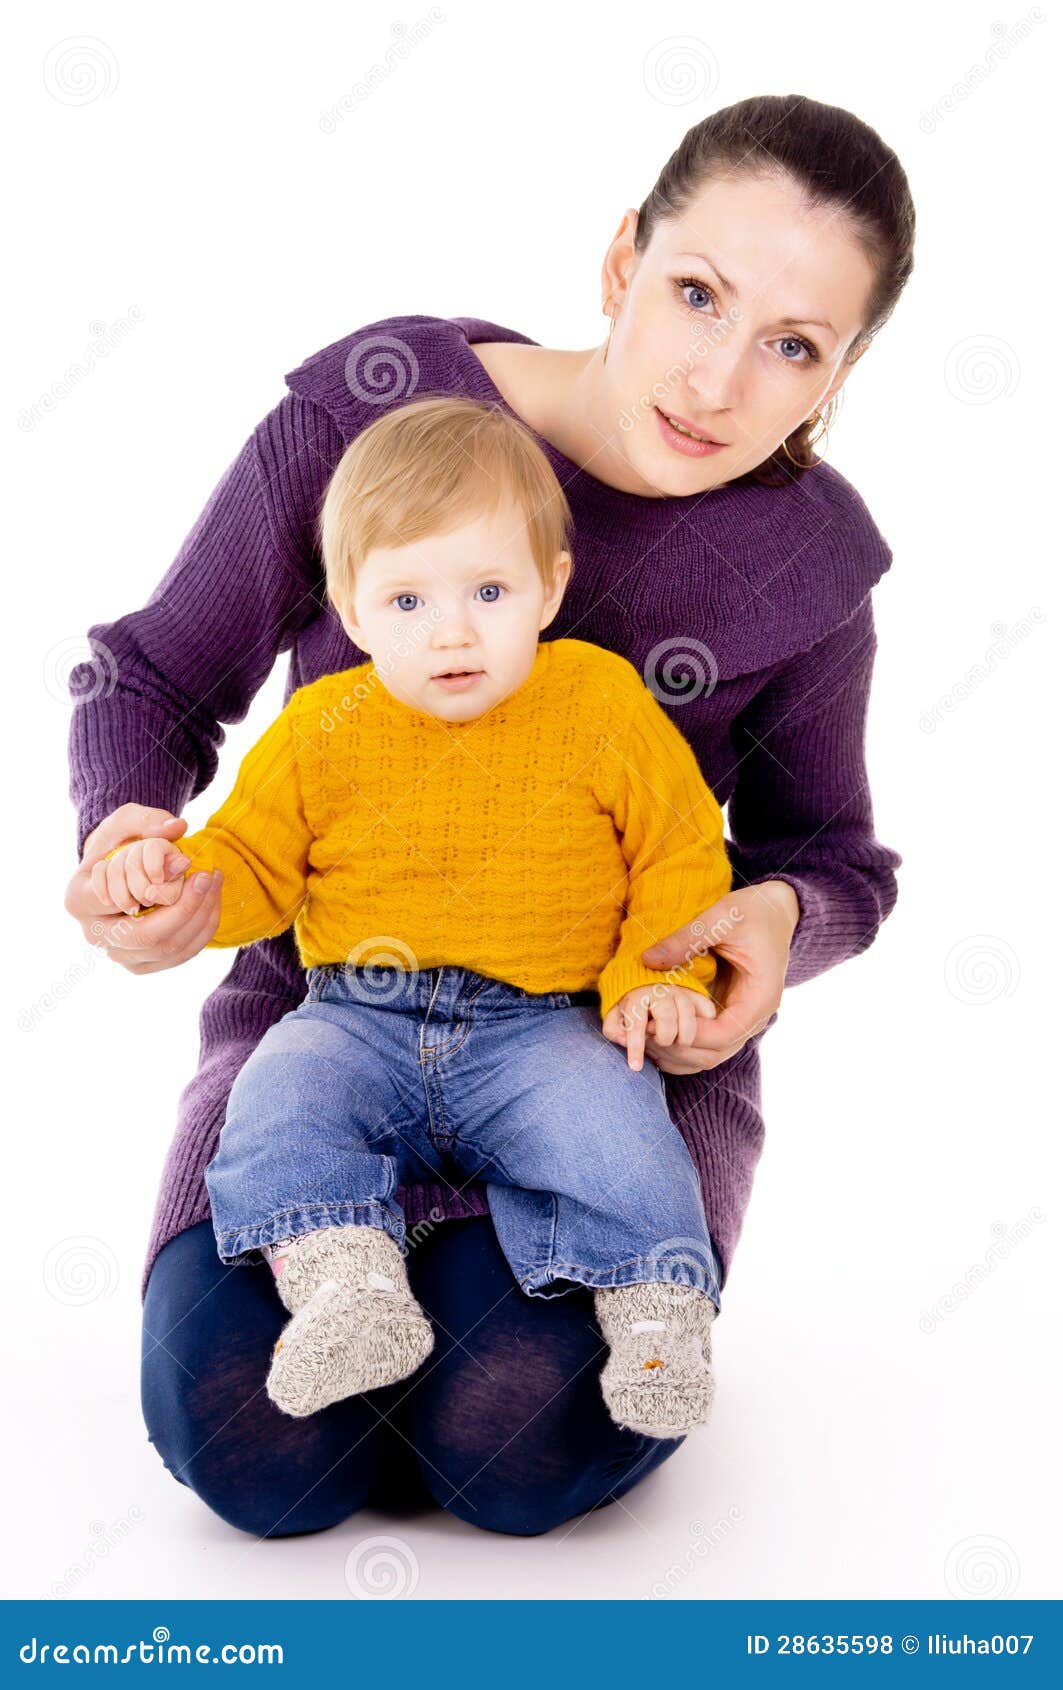 Сижу у мамы на коленях. Ребенок на коленях у мамы. Ребенок сидит на коленях. Женщина с ребенком сидит. Женщина сидит с ребенком на коленях.